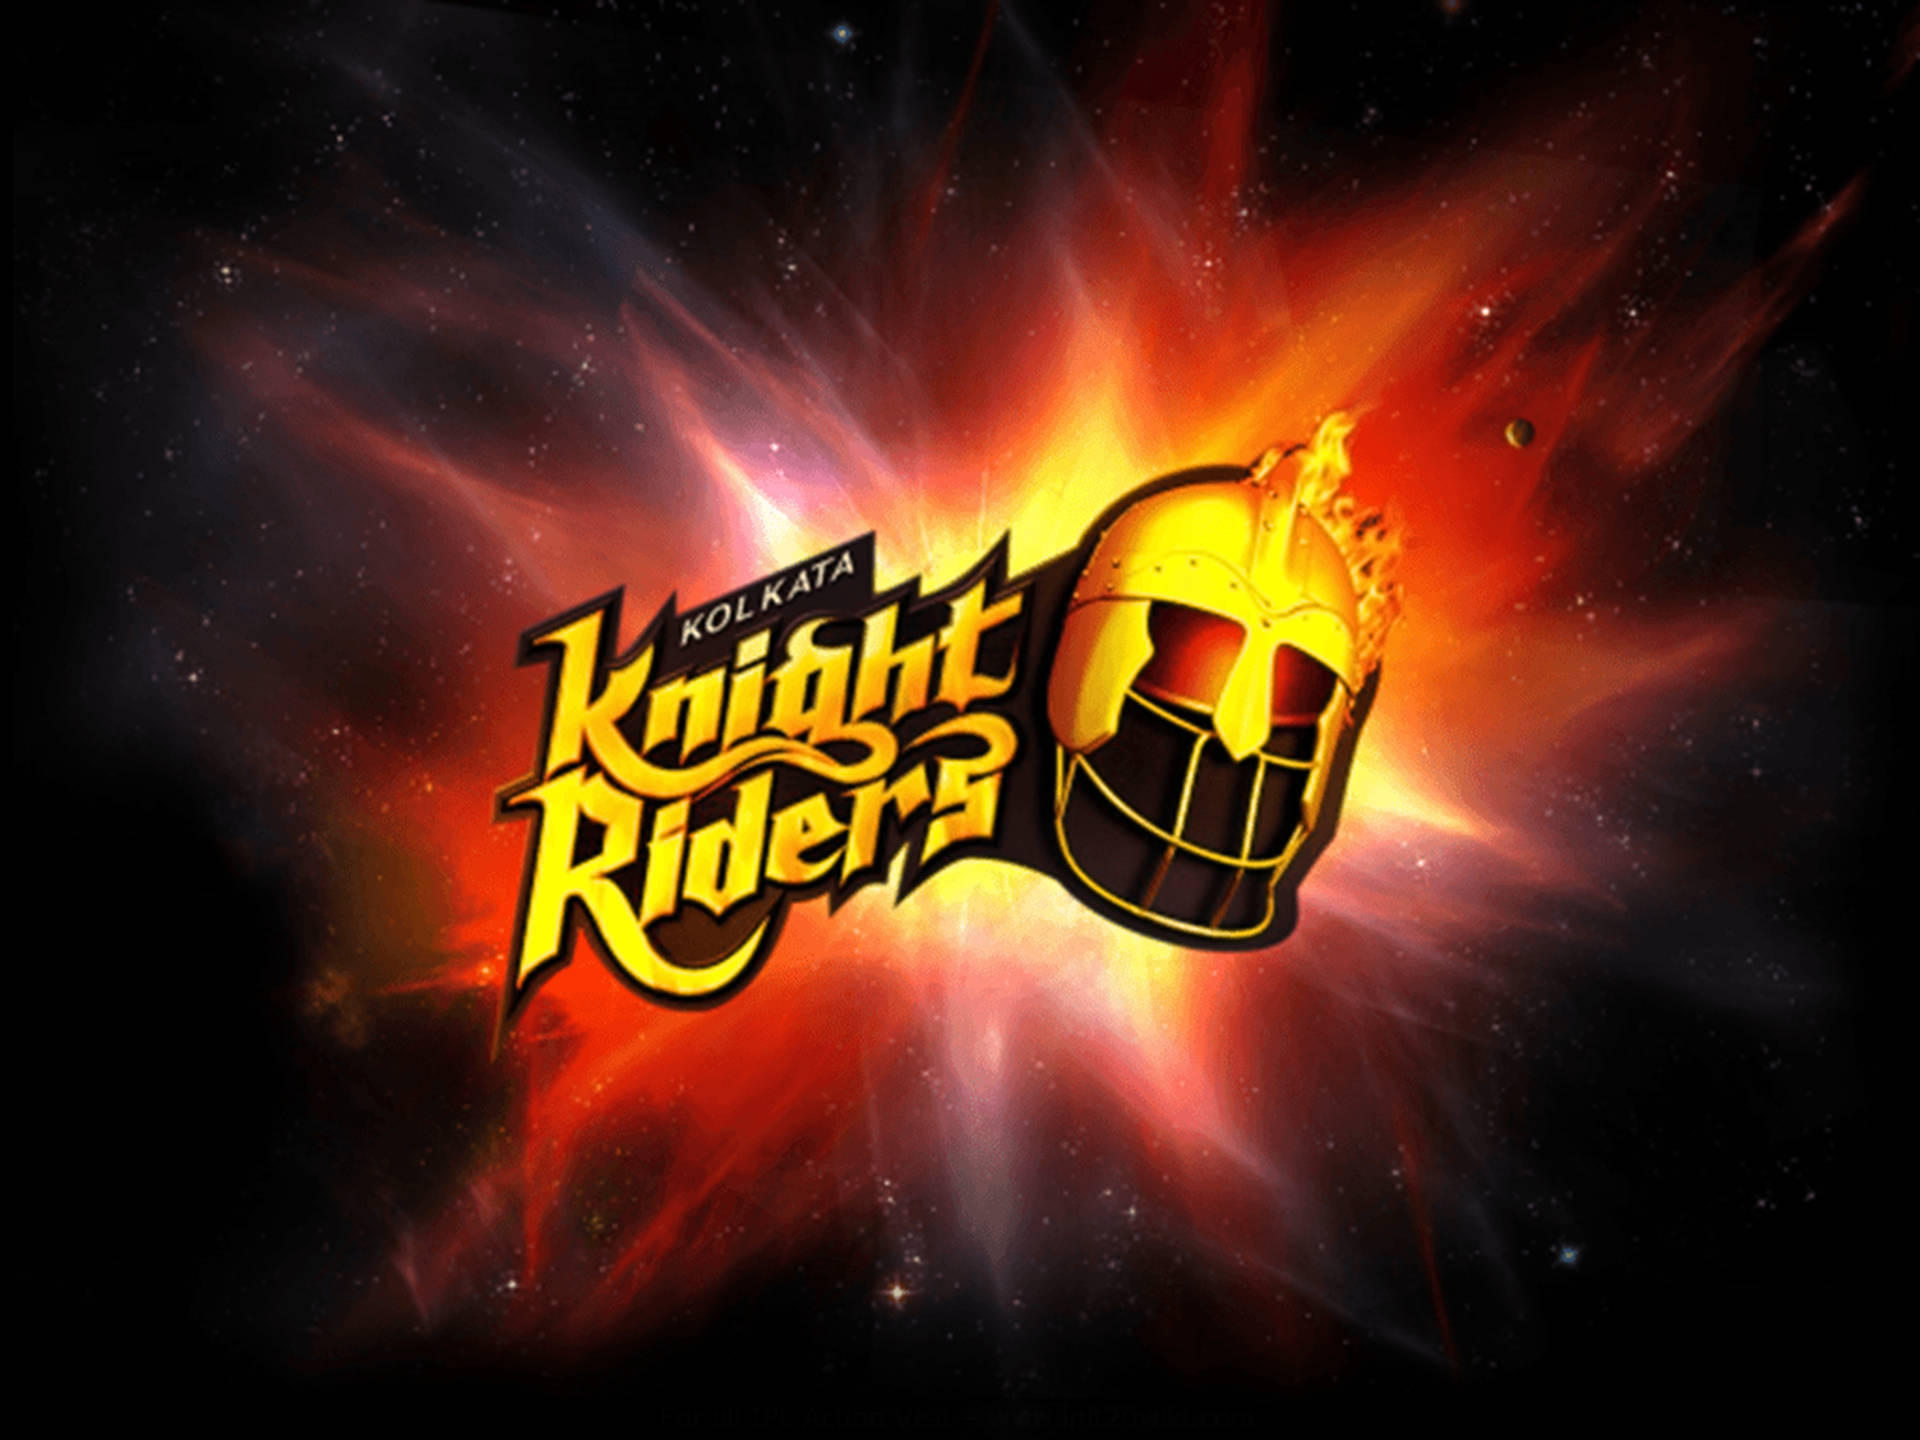 Kolkata Knight Riders Red Galaxy Wallpaper